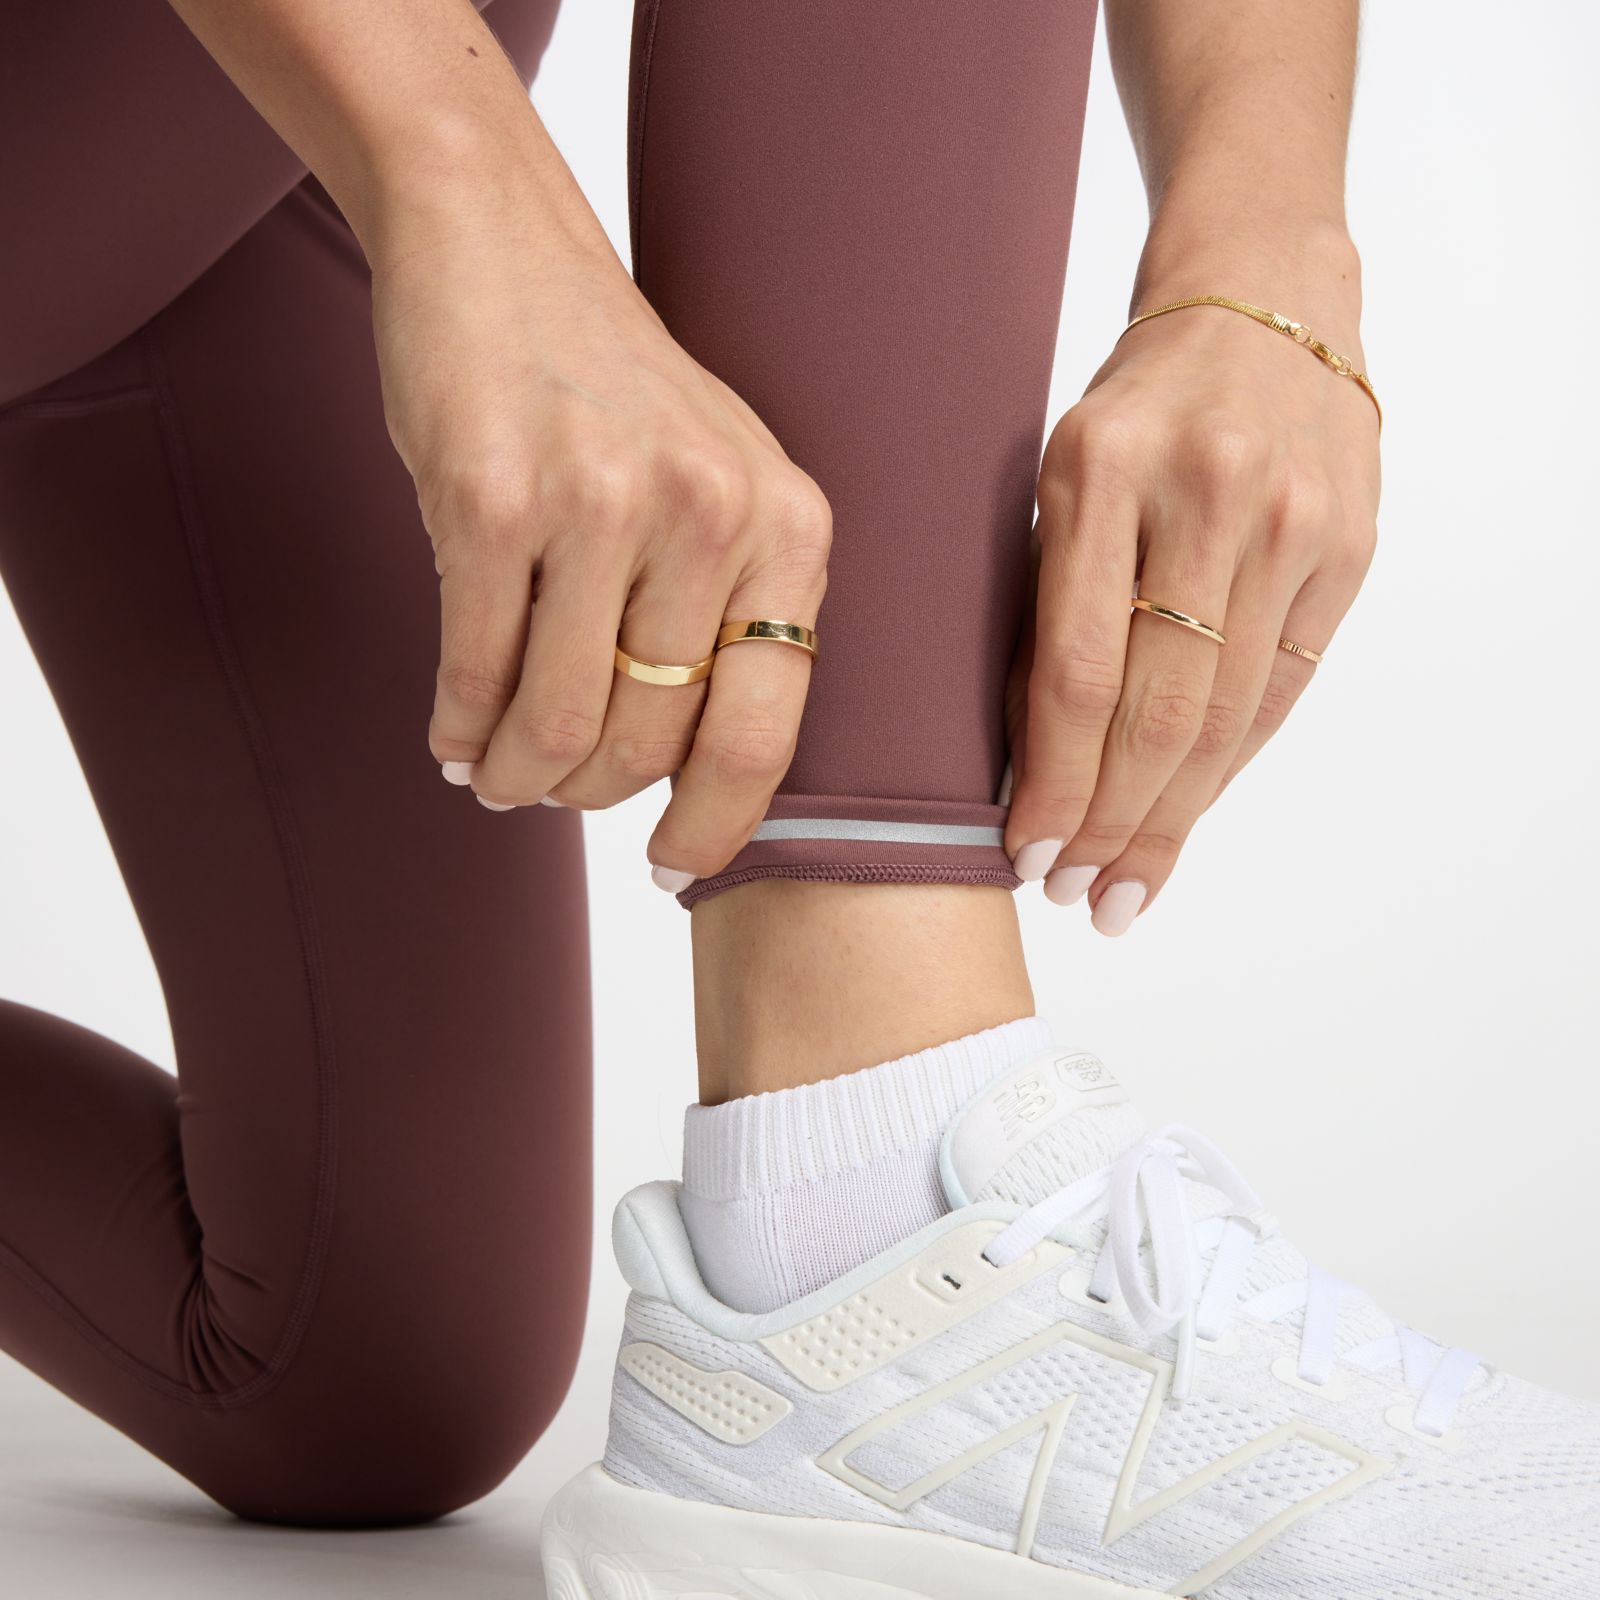 NB New Balance Women's LEGGINGS for Exercising Grey & Black 💥 G5241